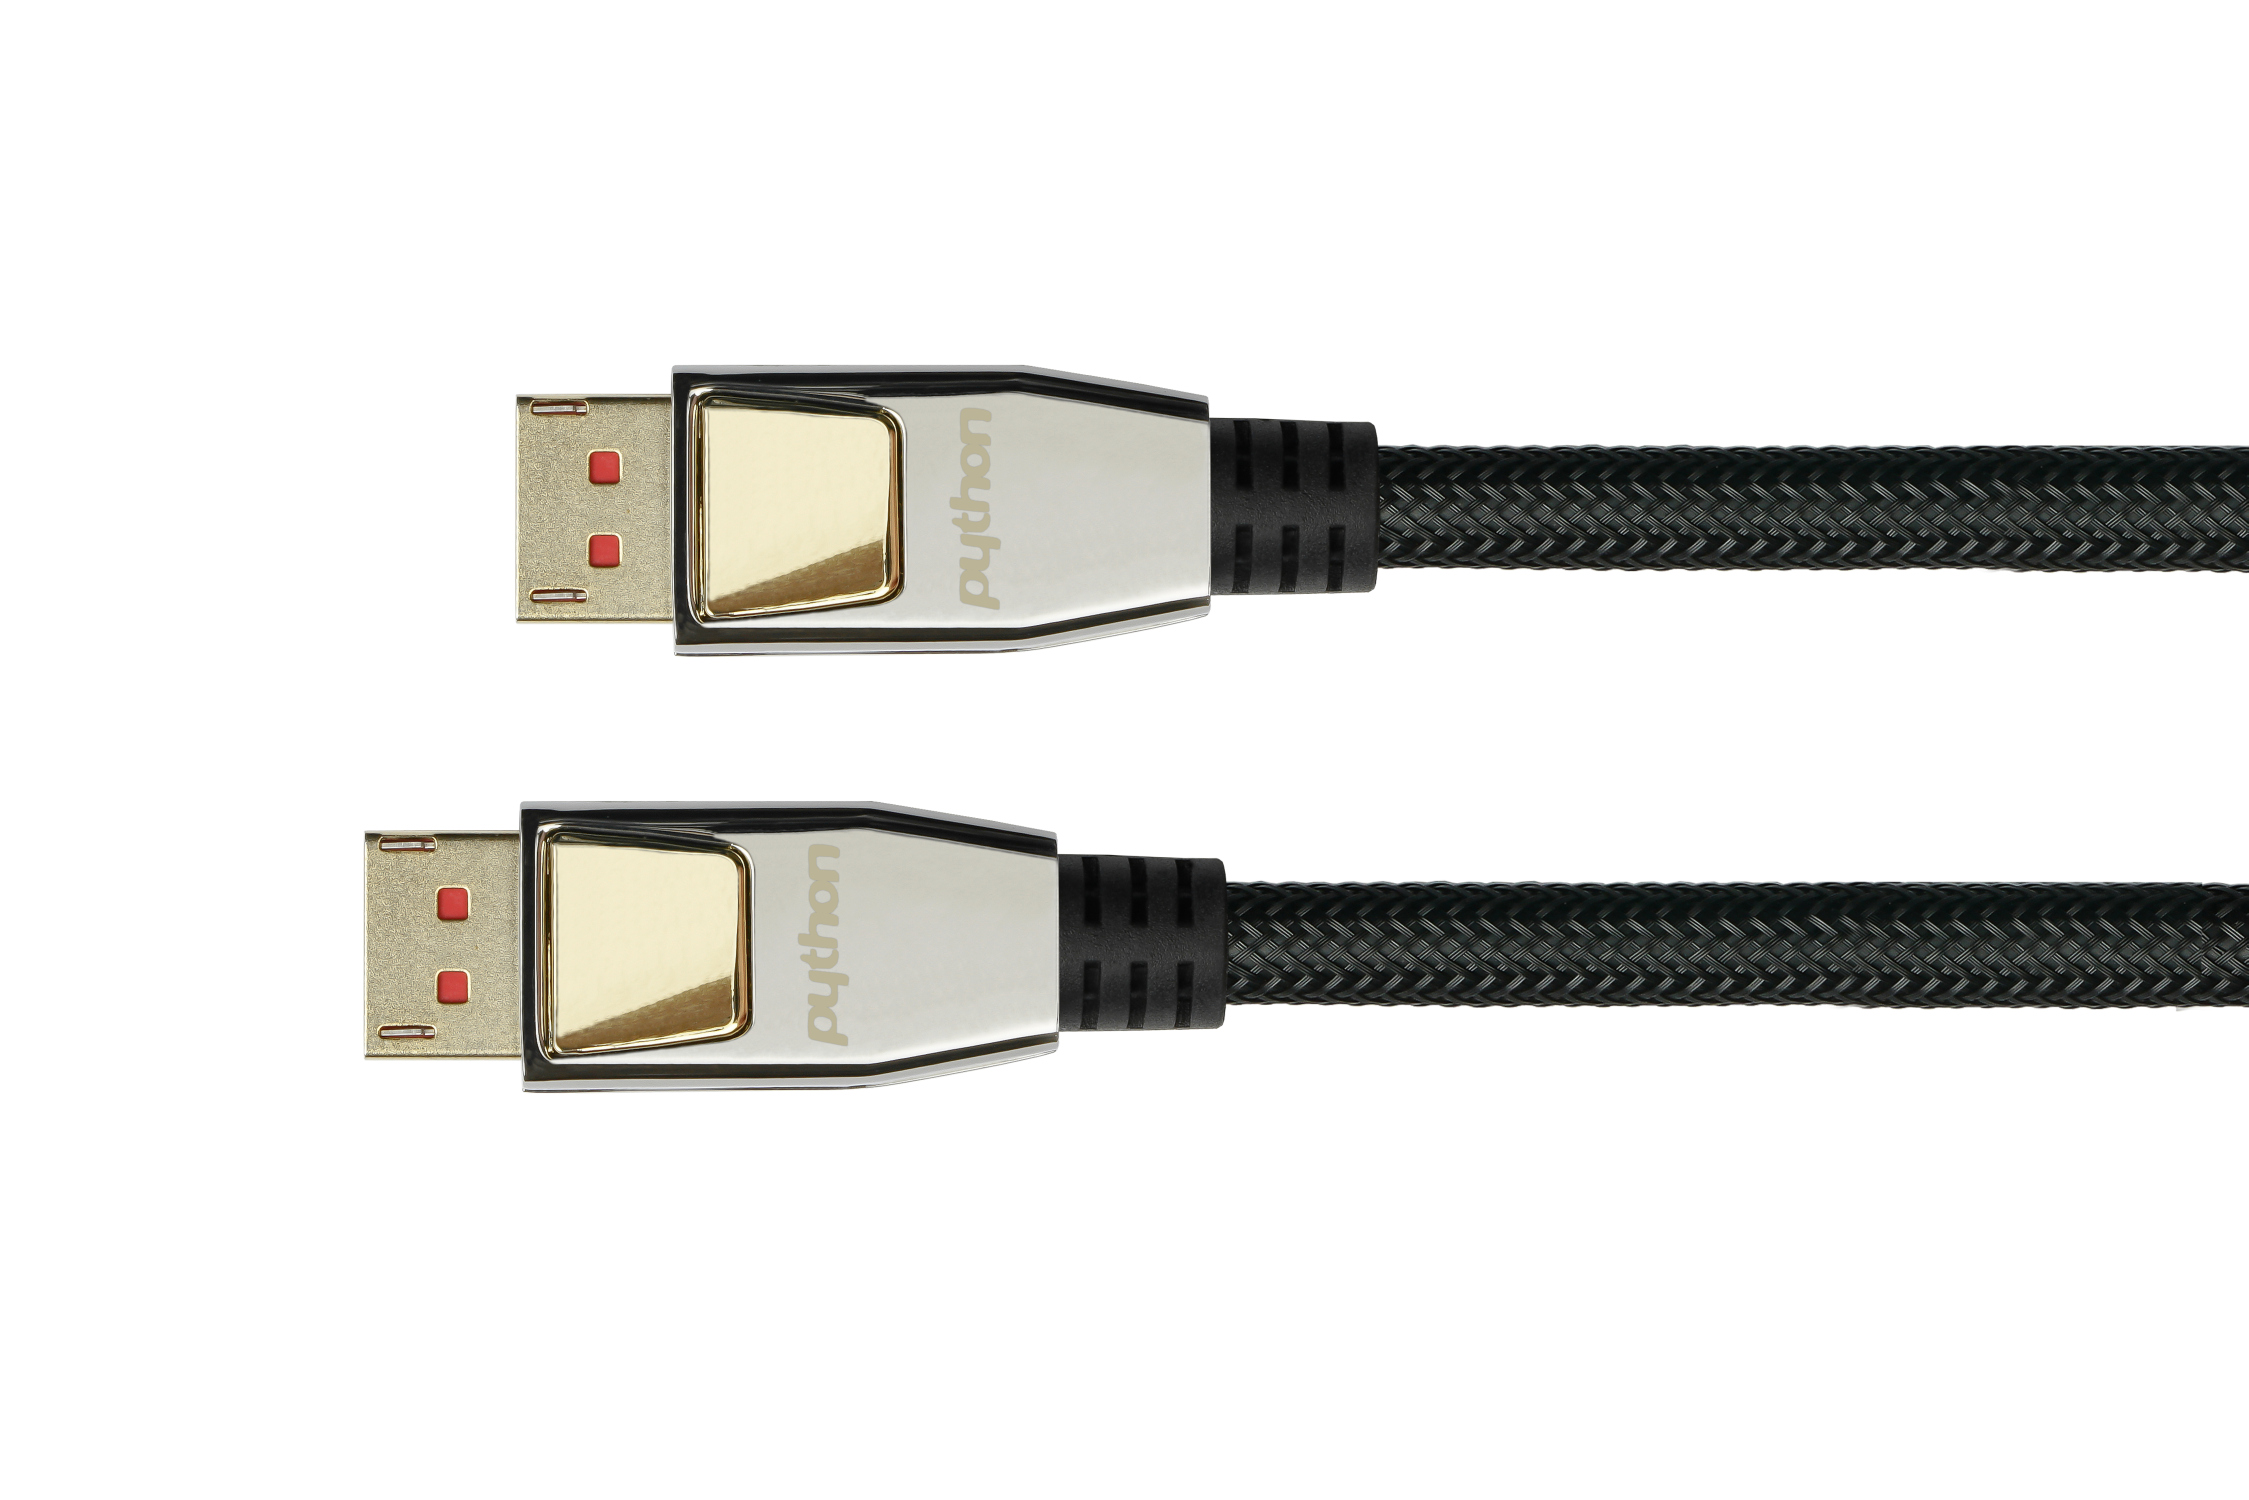 Anschlusskabel DisplayPort 1.4, 8K/UHD-2 @60Hz, AKTIV (Redmere Chips.), Nylongeflecht schwarz, 10m